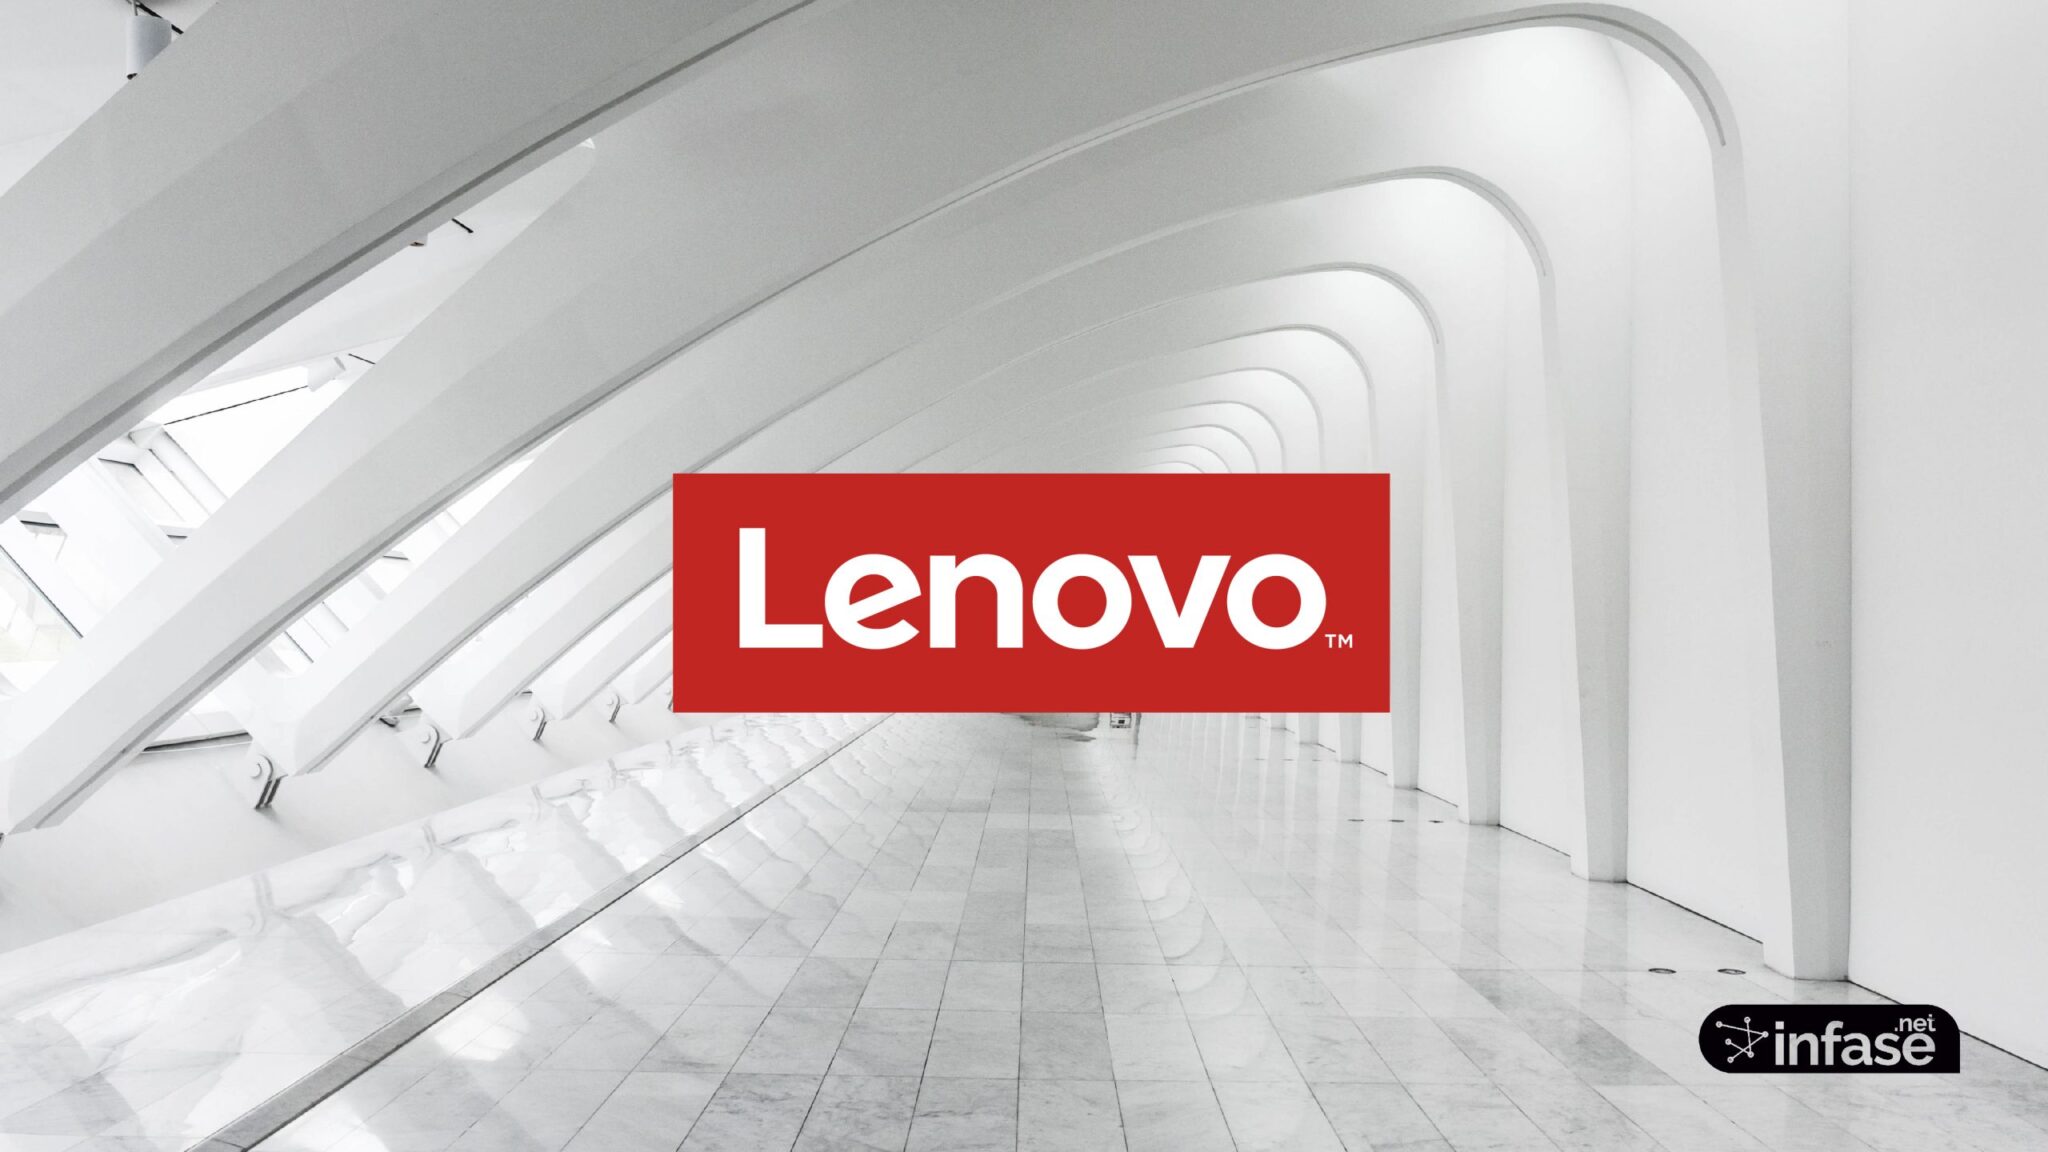 Fondo de pantalla Lenovo